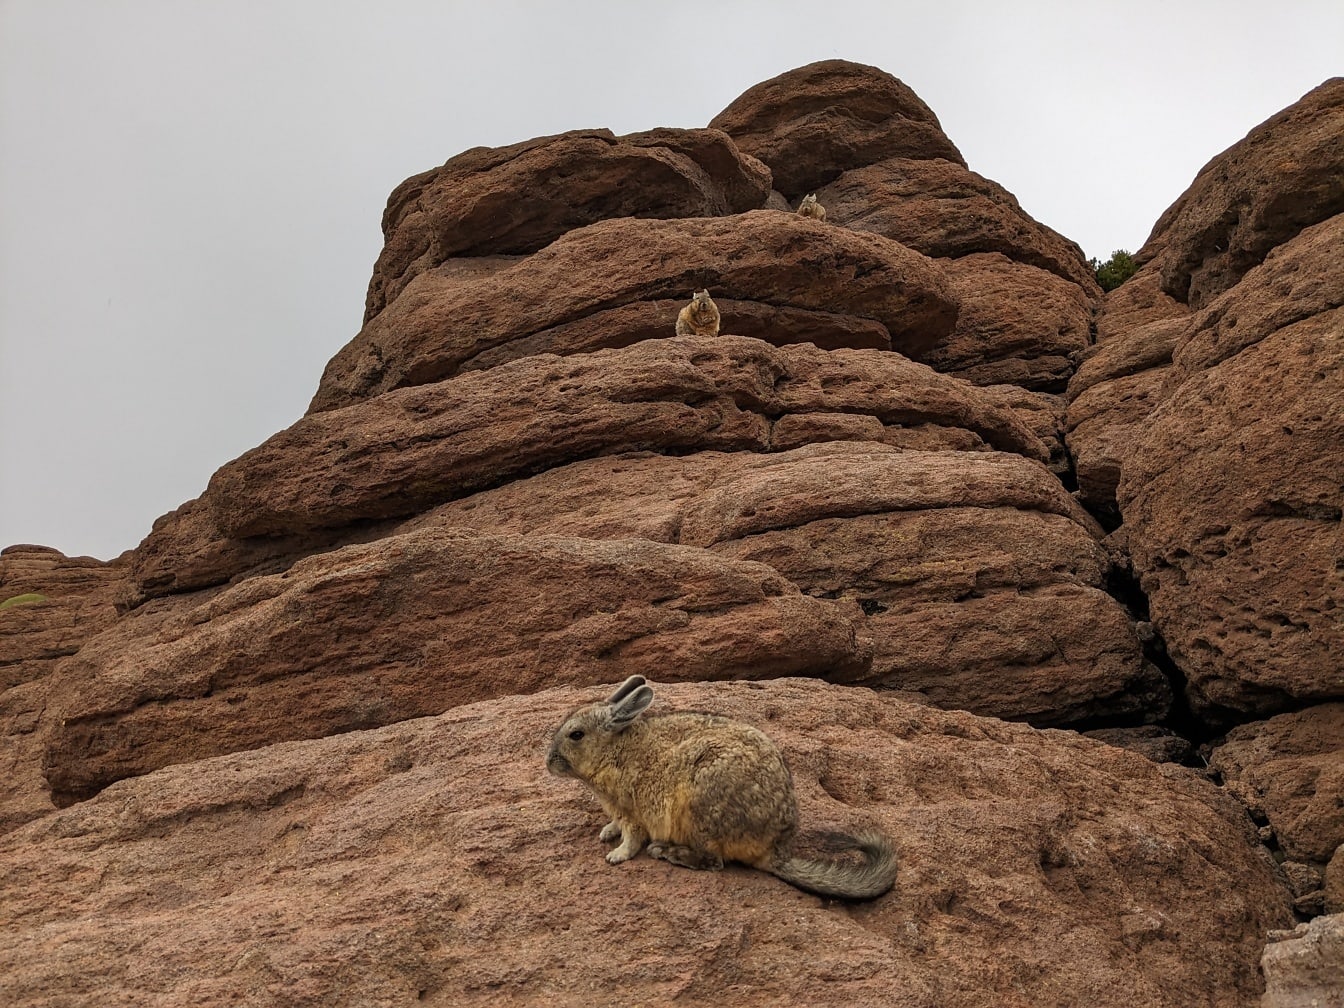 A viscacha do sul (Lagidium viscacia) animal em uma rocha no deserto peruano